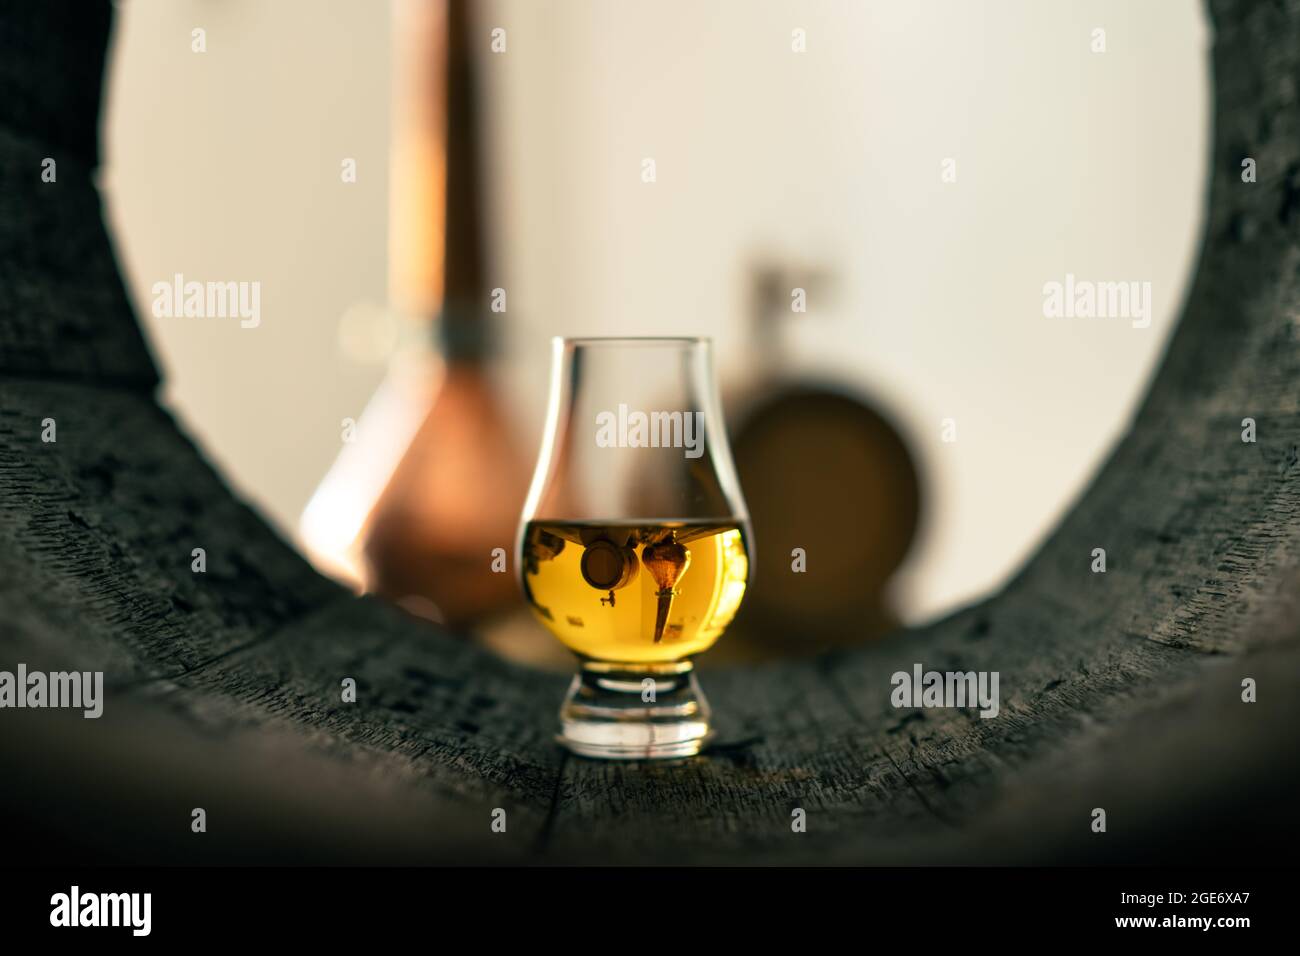 Un verre de whisky dans le vieux tonneau de chêne. Cuivre alambique en arrière-plan. Concept de distillerie d'alcool traditionnelle Banque D'Images